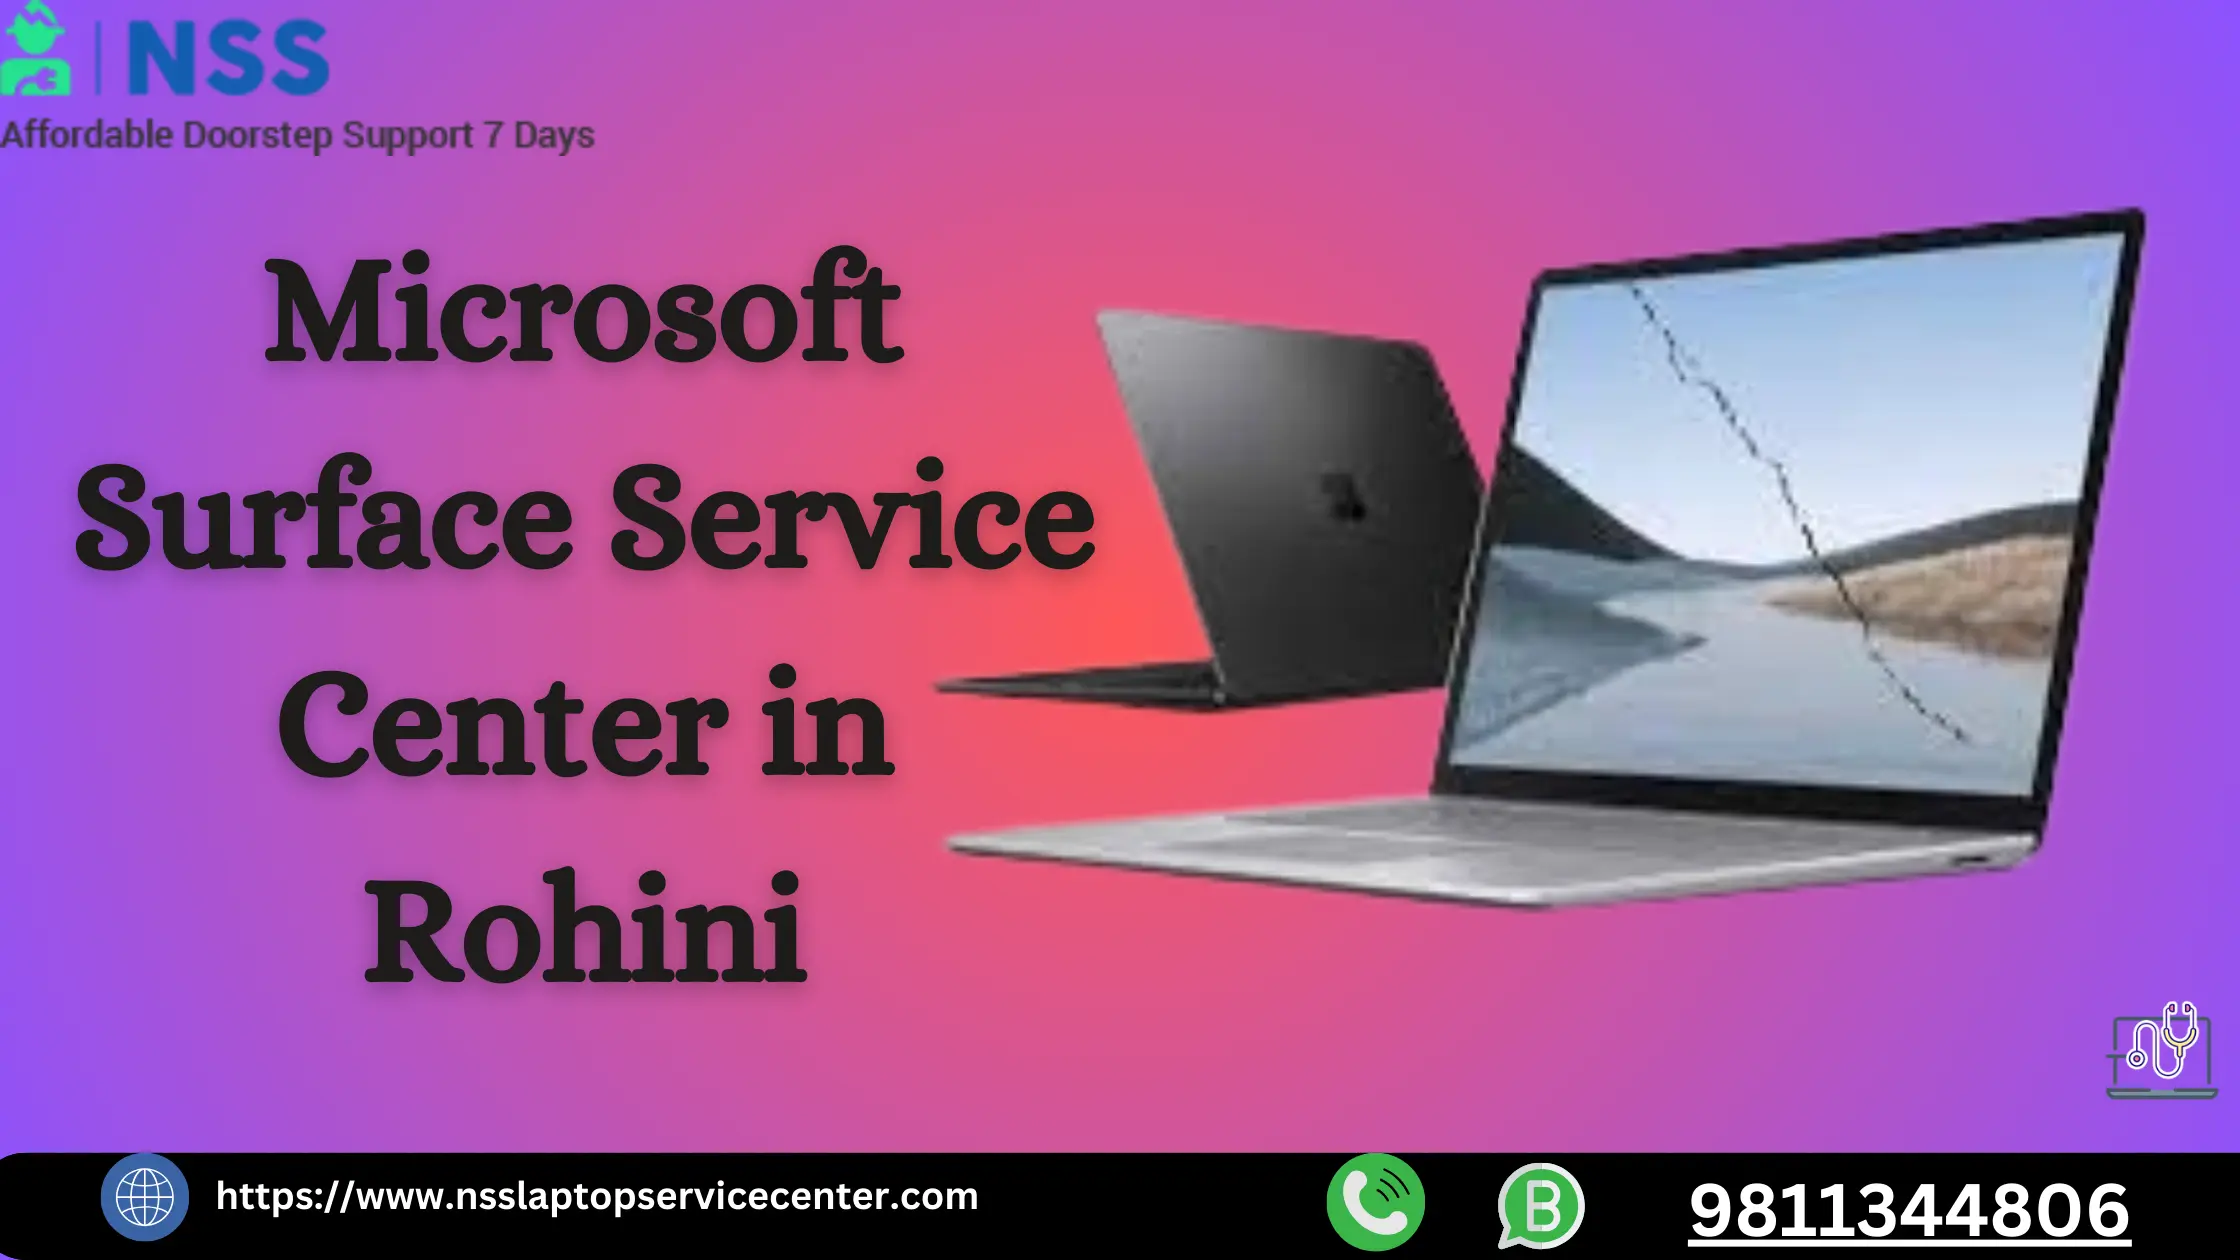 Microsoft Surface Service Center in Rohini Near Delhi